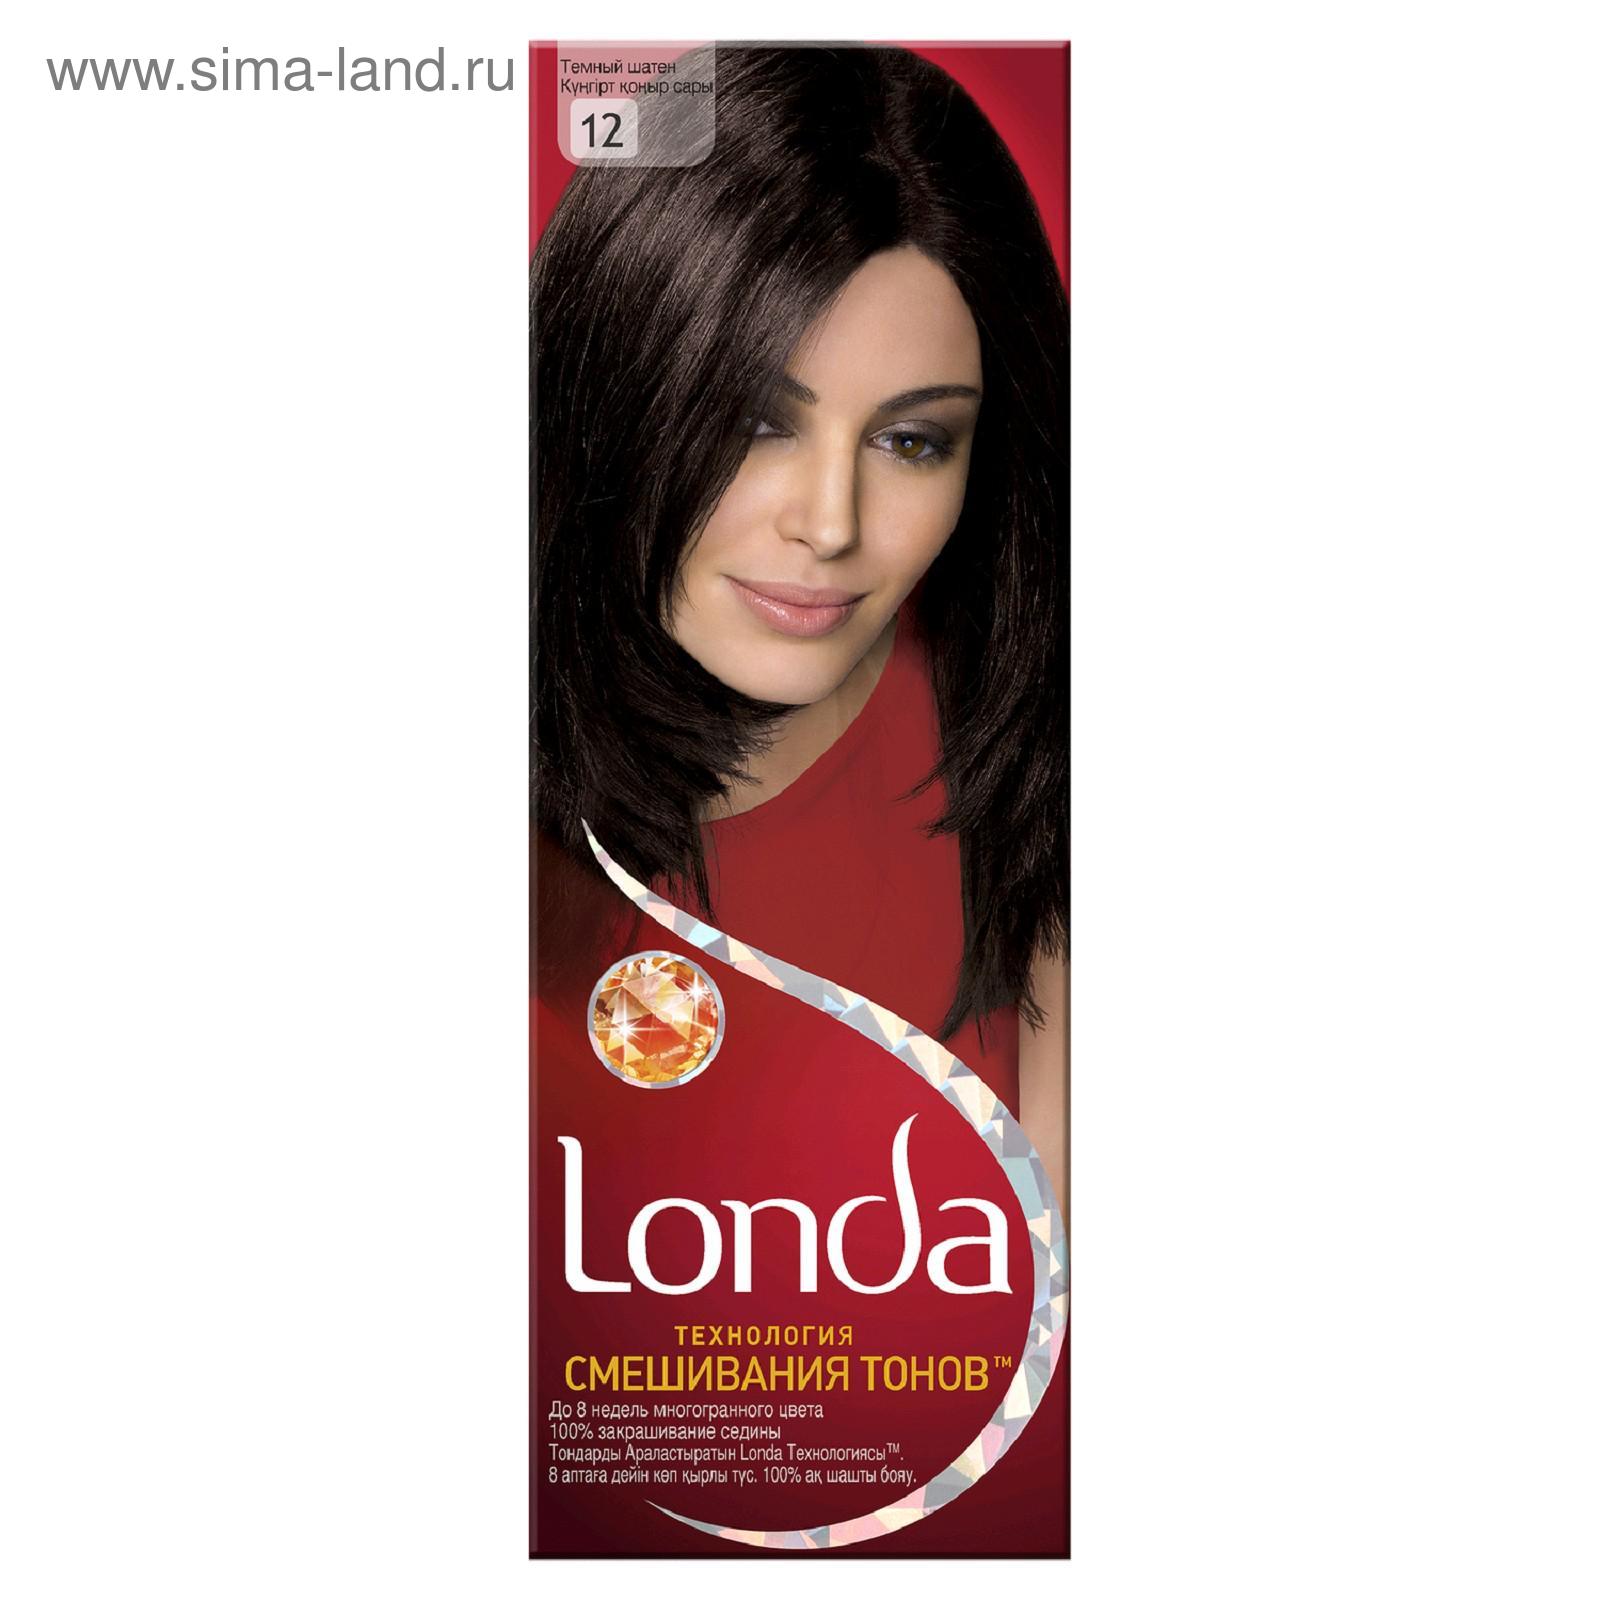 Londa крем-краска для волос стойкая 12 темный шатен